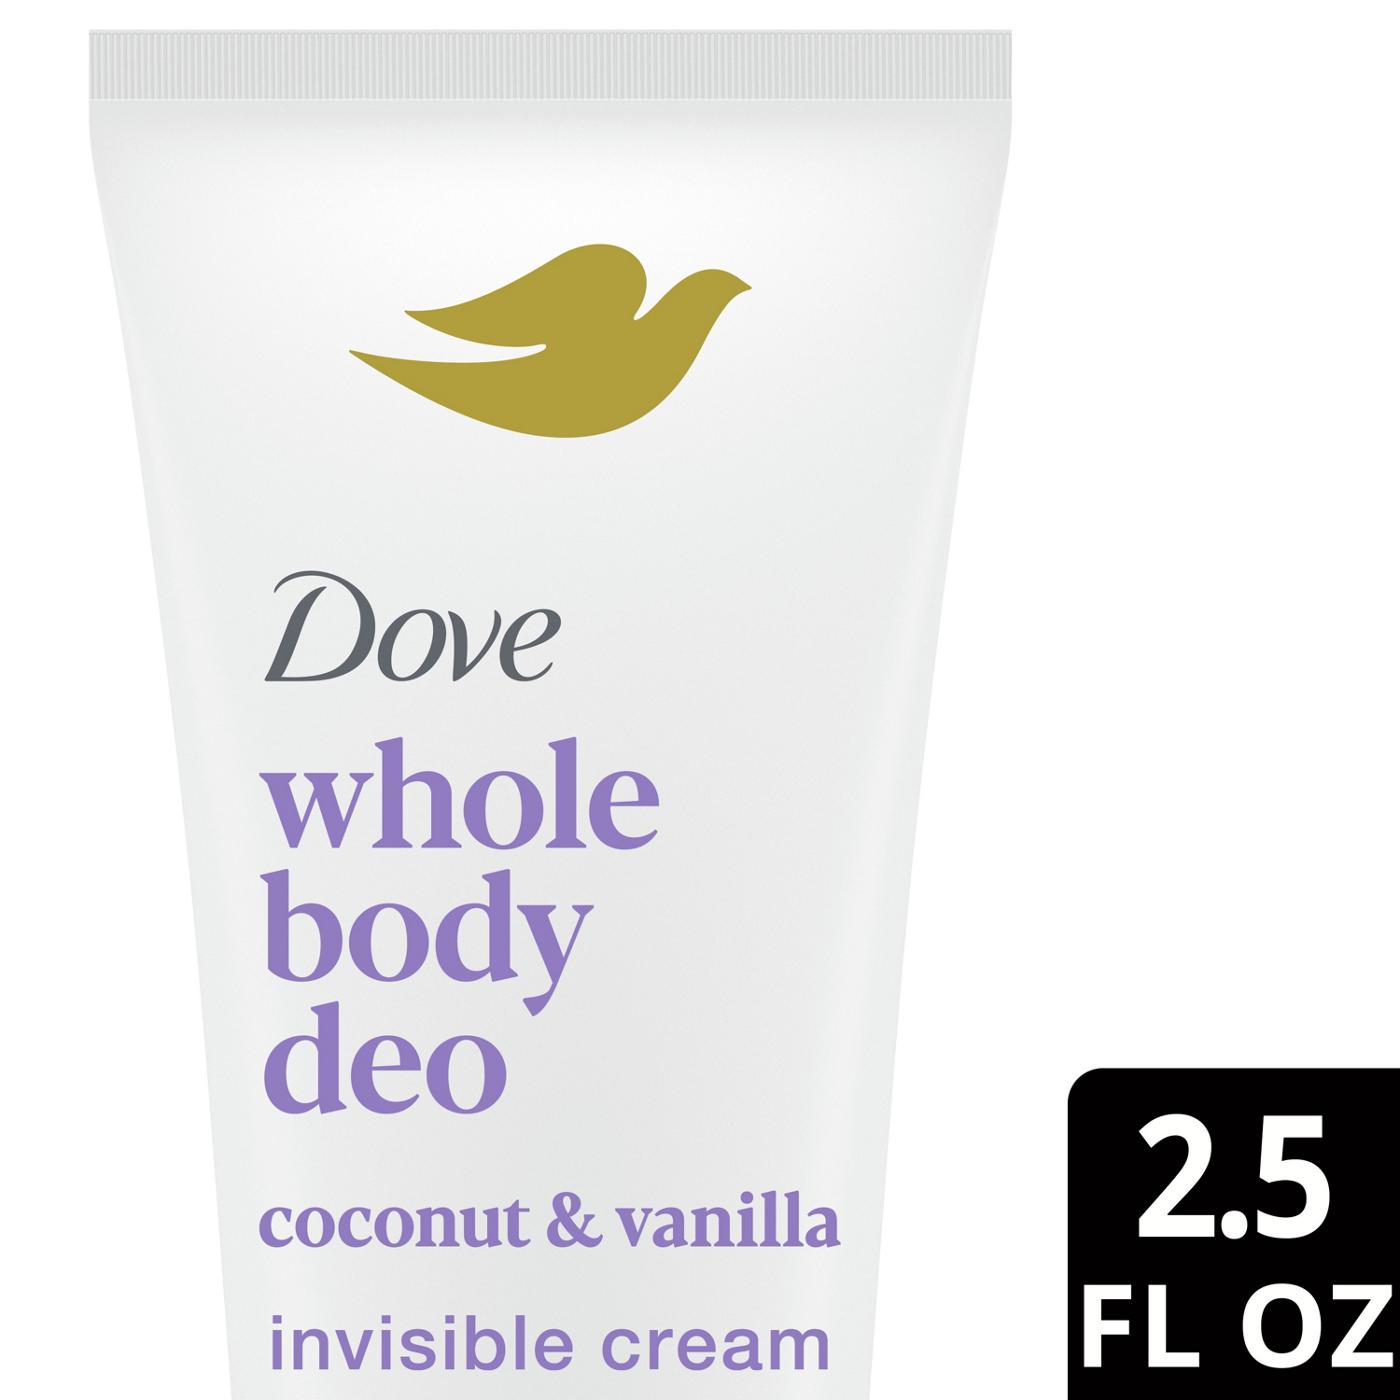 Dove Whole Body Deo - Cream - Coconut & Vanilla; image 5 of 7